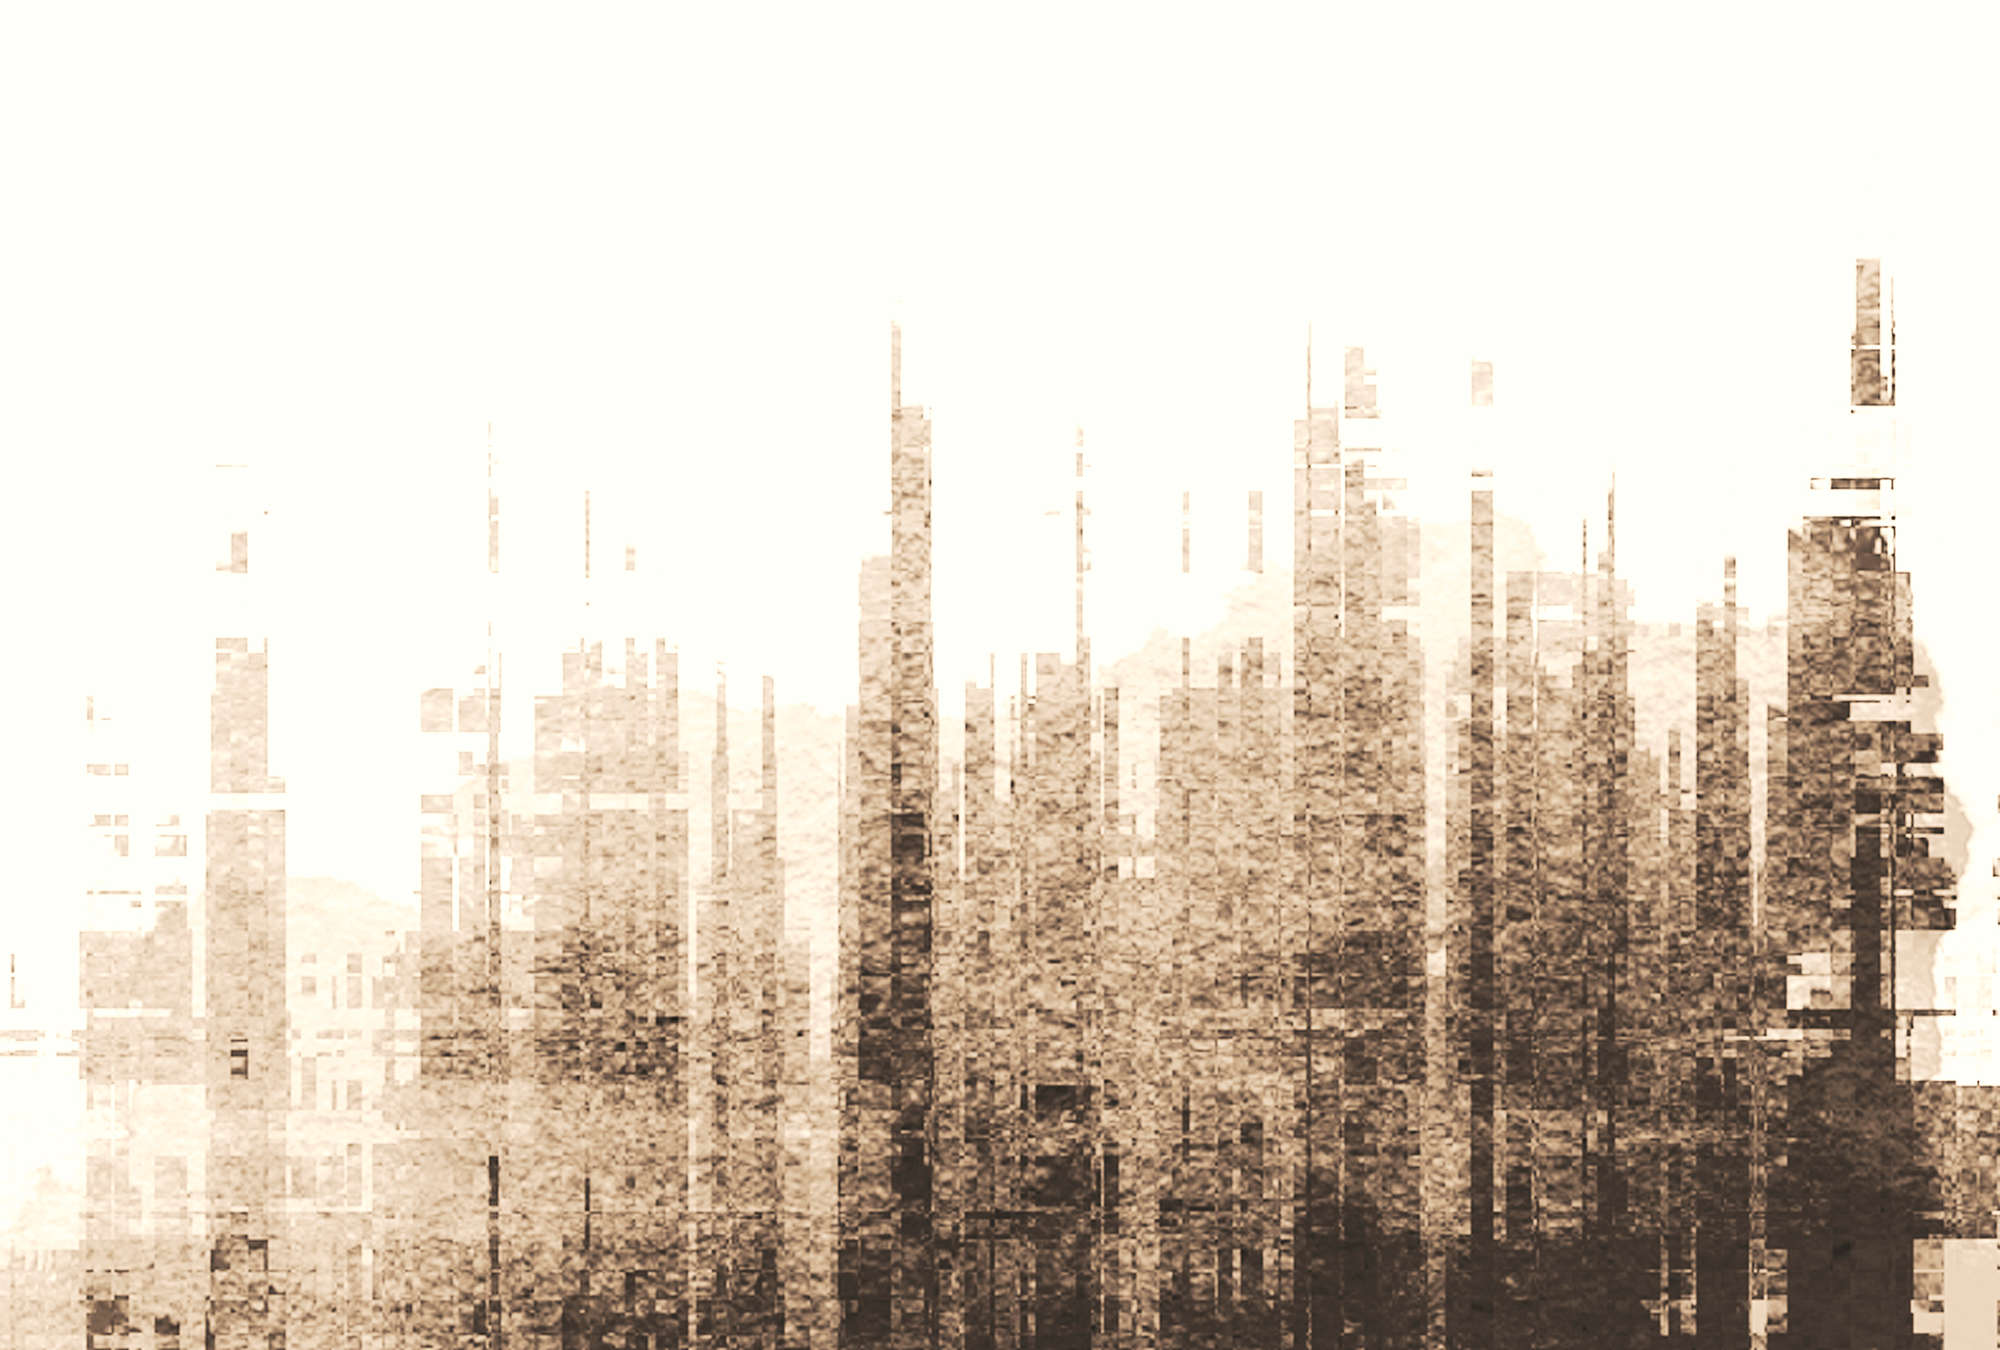             Fototapete Liniendesign, abstrakte Skyline – Beige, Weiß, Schwarz
        